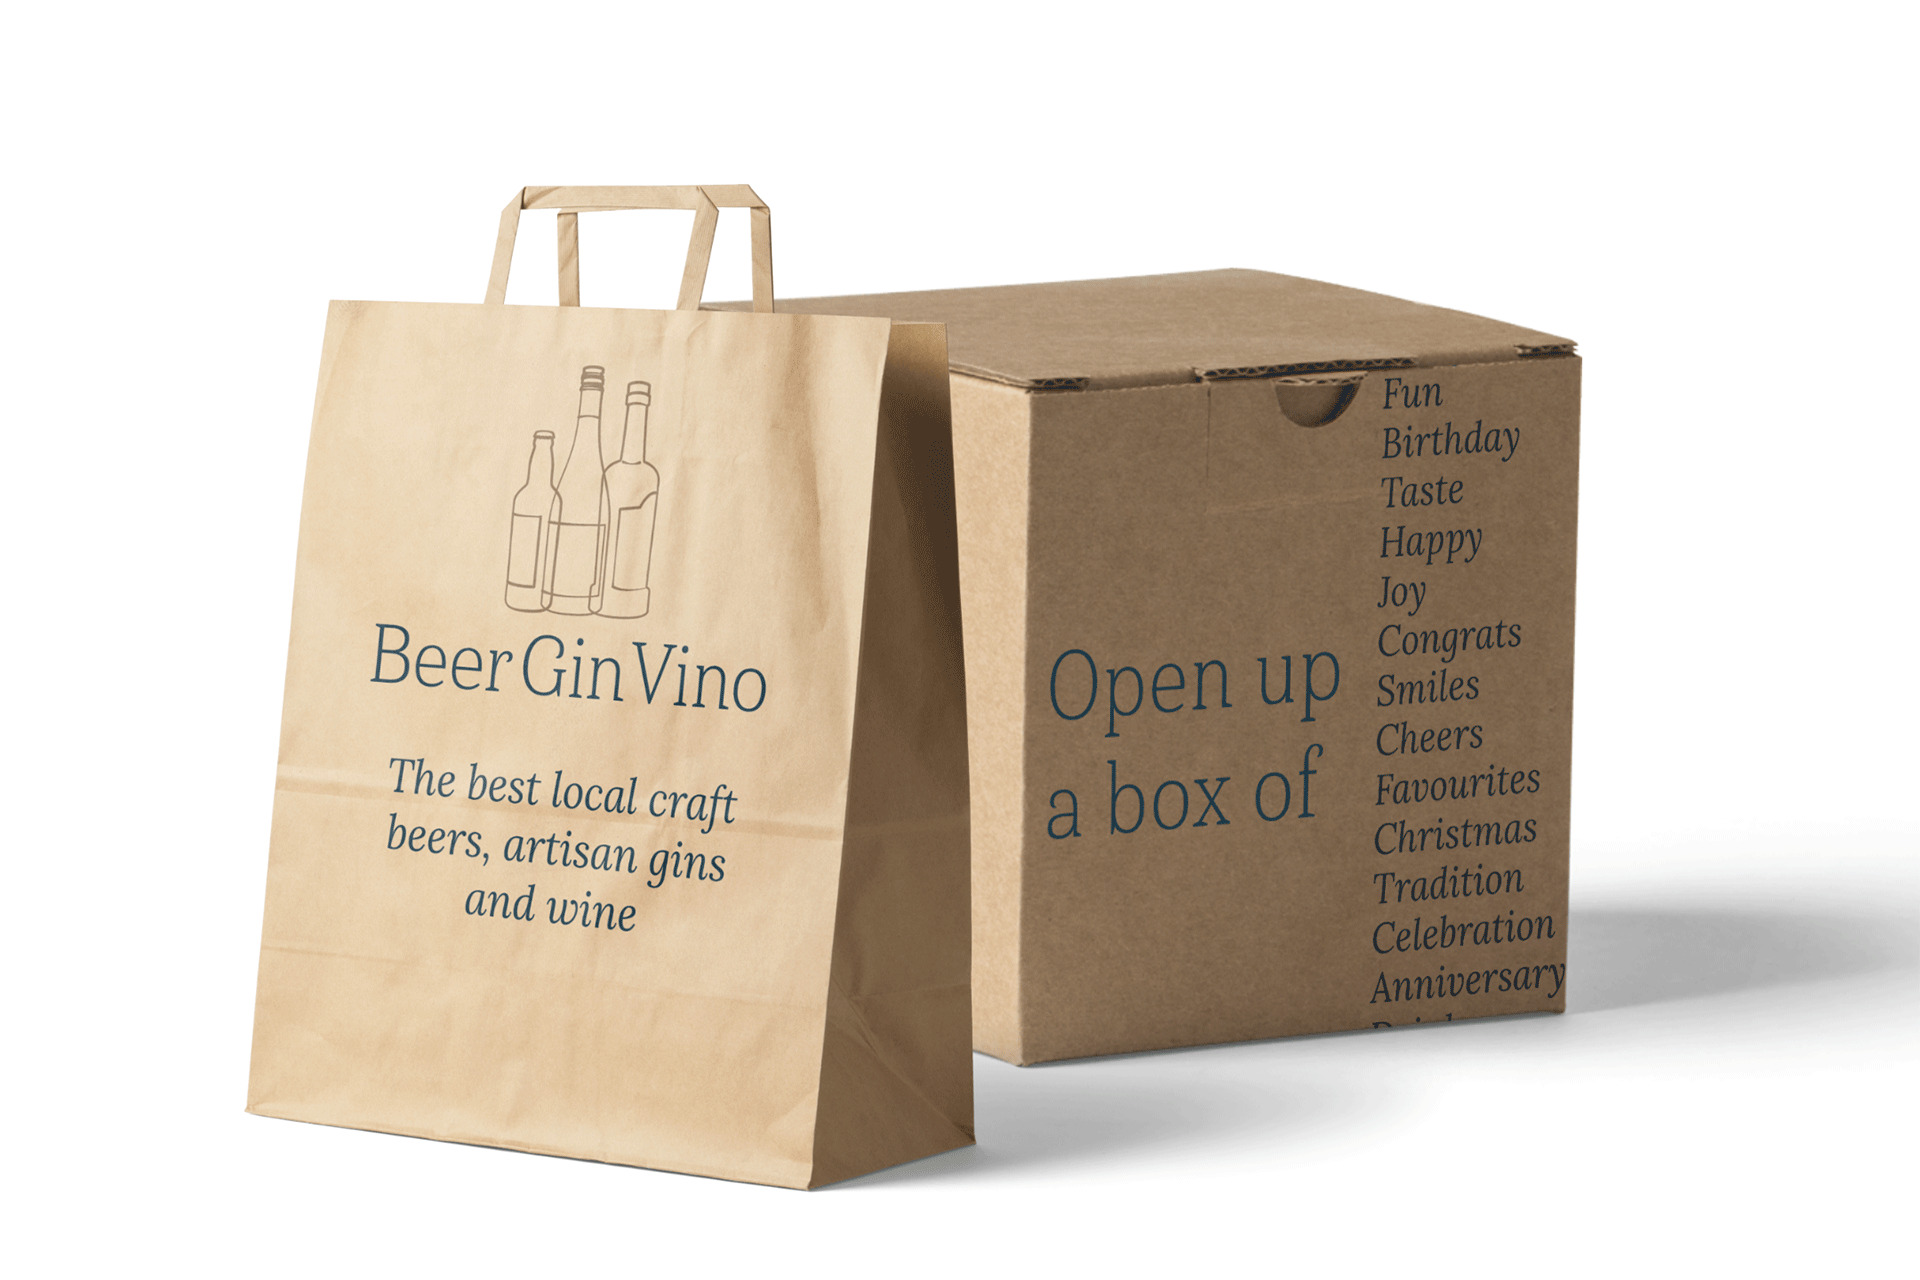 BeerGinVino packaging photo